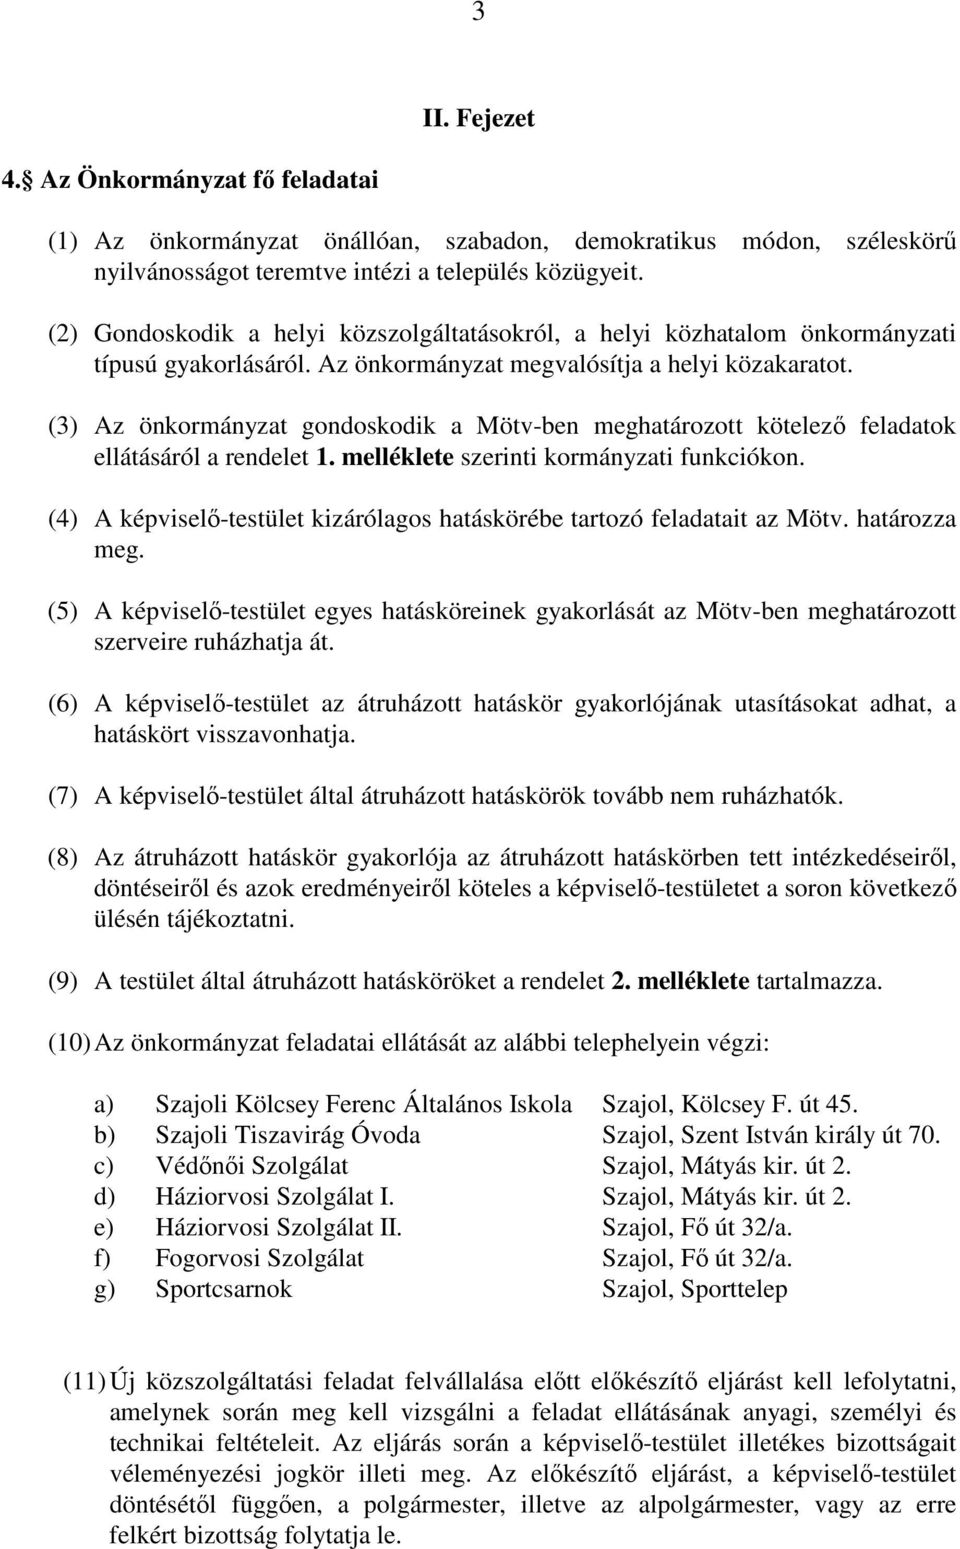 (3) Az önkormányzat gondoskodik a Mötv-ben meghatározott kötelező feladatok ellátásáról a rendelet 1. melléklete szerinti kormányzati funkciókon.